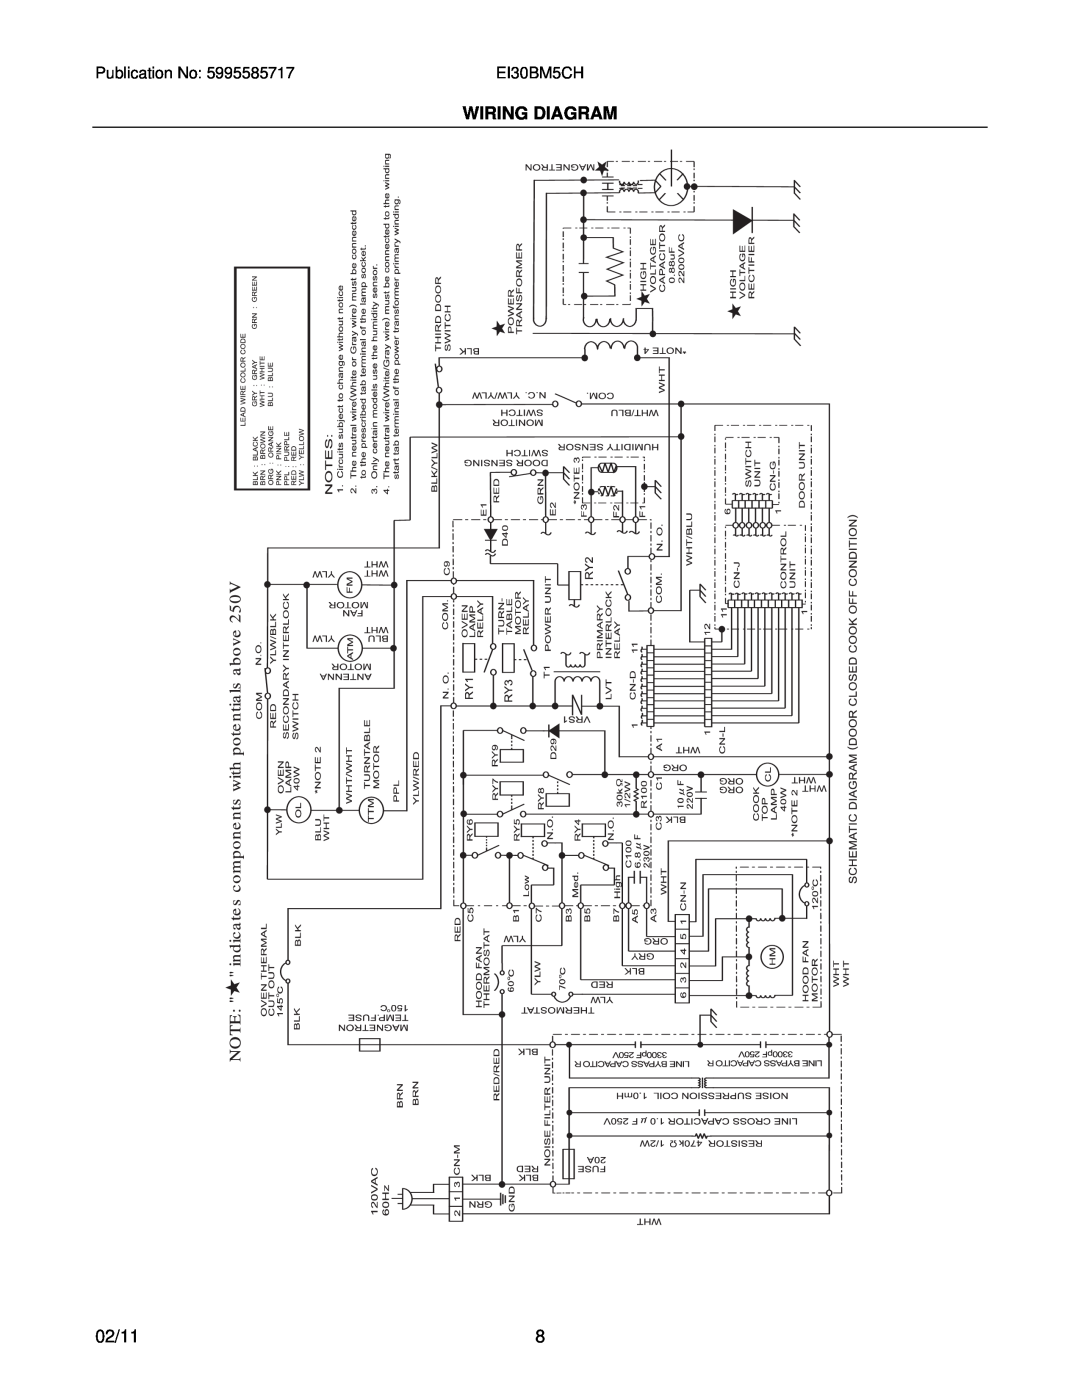 Electrolux EI30BM5CH installation instructions Wiring Diagram, 02/11 